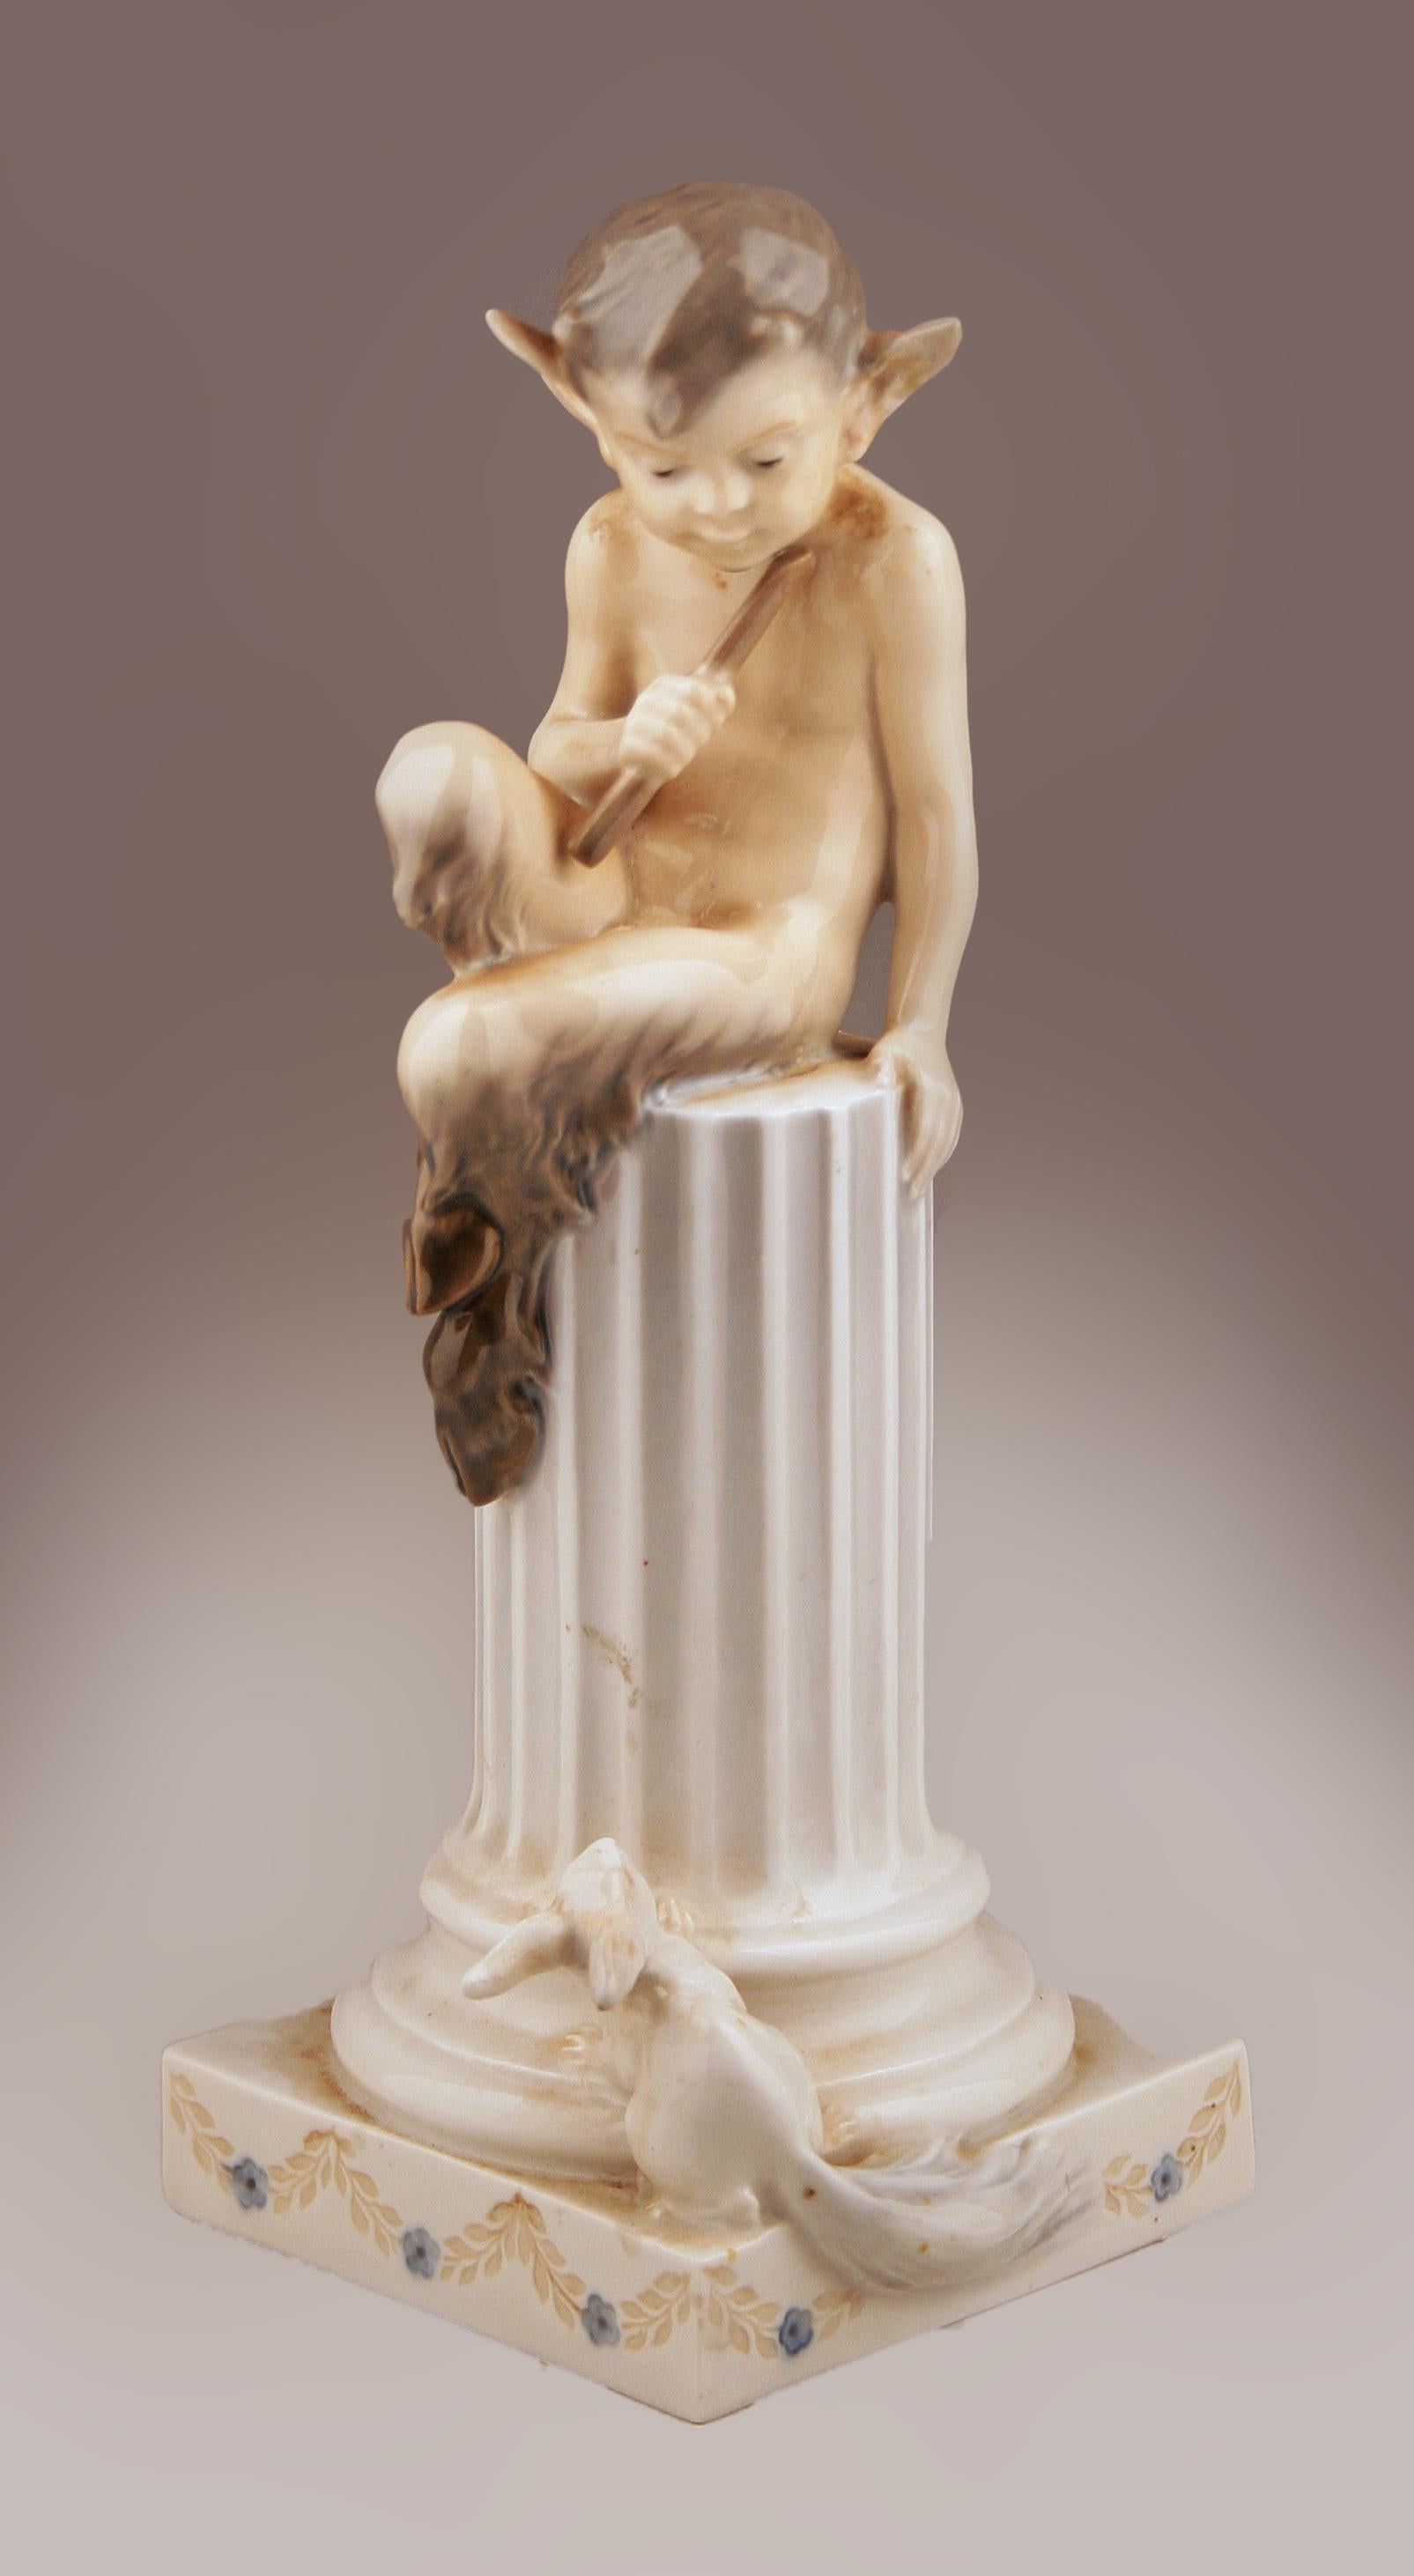 Mitte des 20. Jahrhunderts dänische glasierte Porzellanskulptur eines Fauns (Satyr), der über einer Säule sitzt, und eines Kaninchens von der dänischen Firma Royal Copenhagen

Von: Royal Copenhagen
MATERIAL: Porzellan, Farbe, Keramik
Technik: